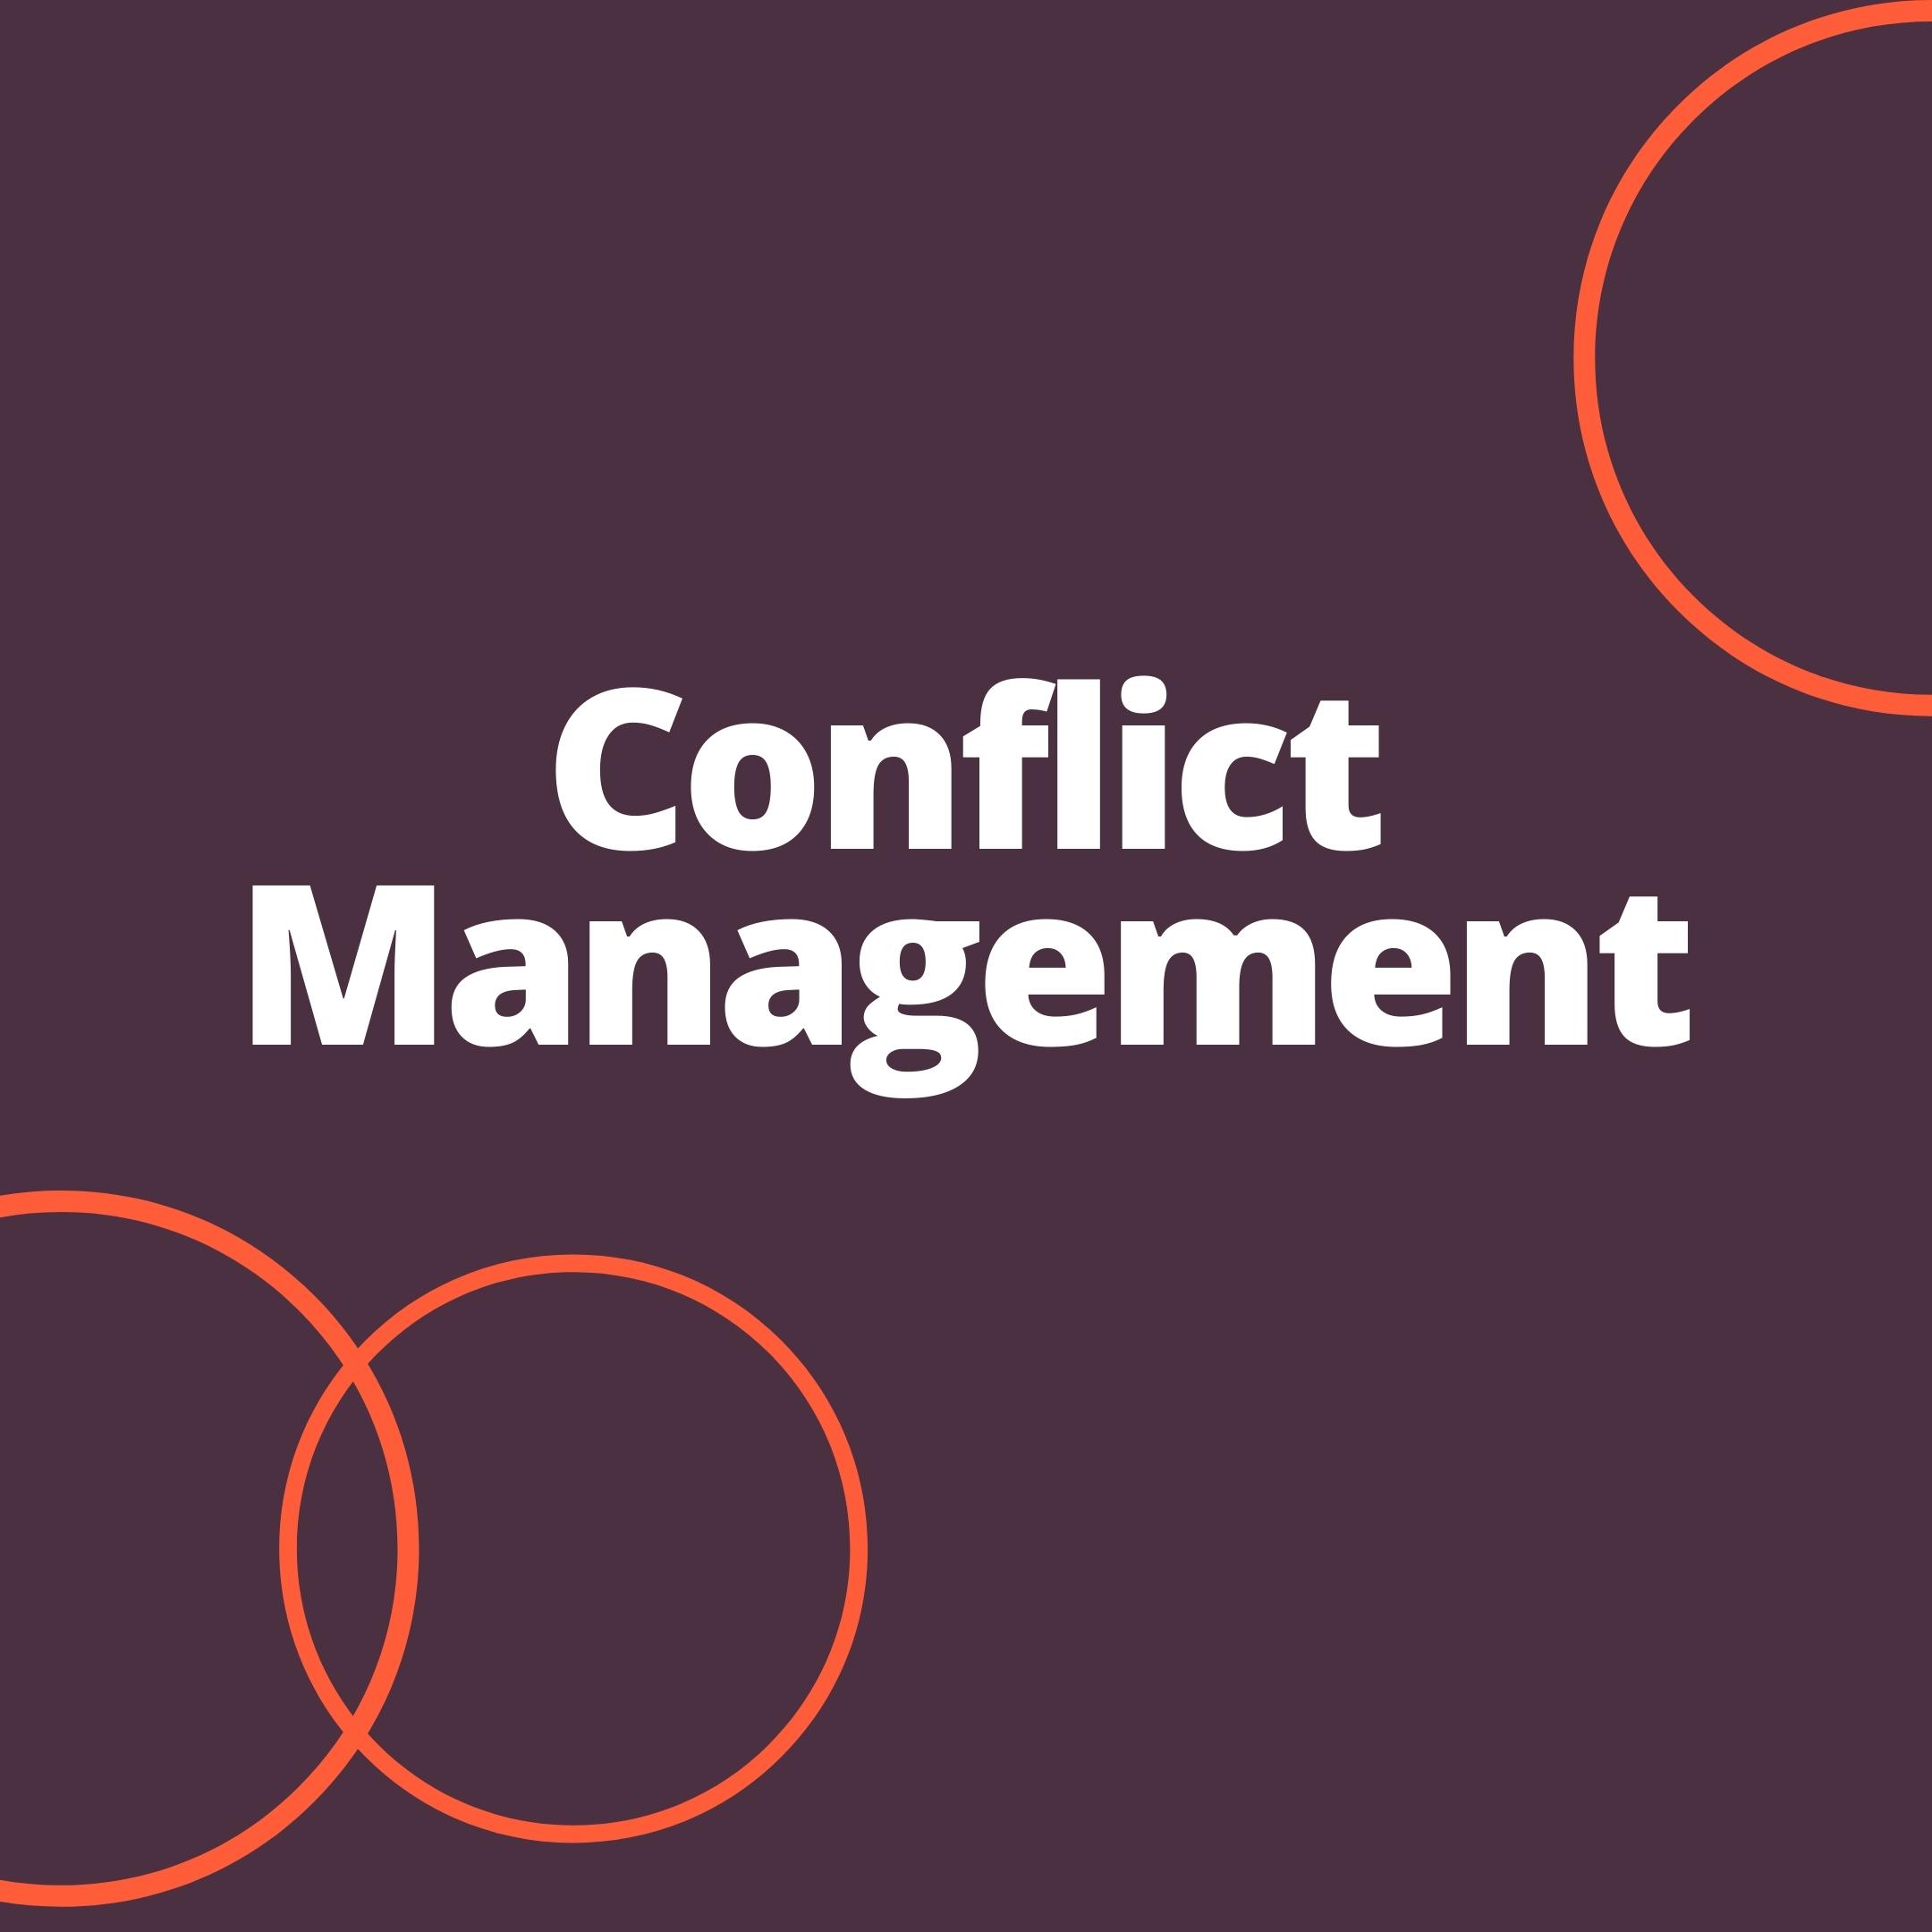 Online Conflict Resolution Course | Conflict Management - Bonfire Training